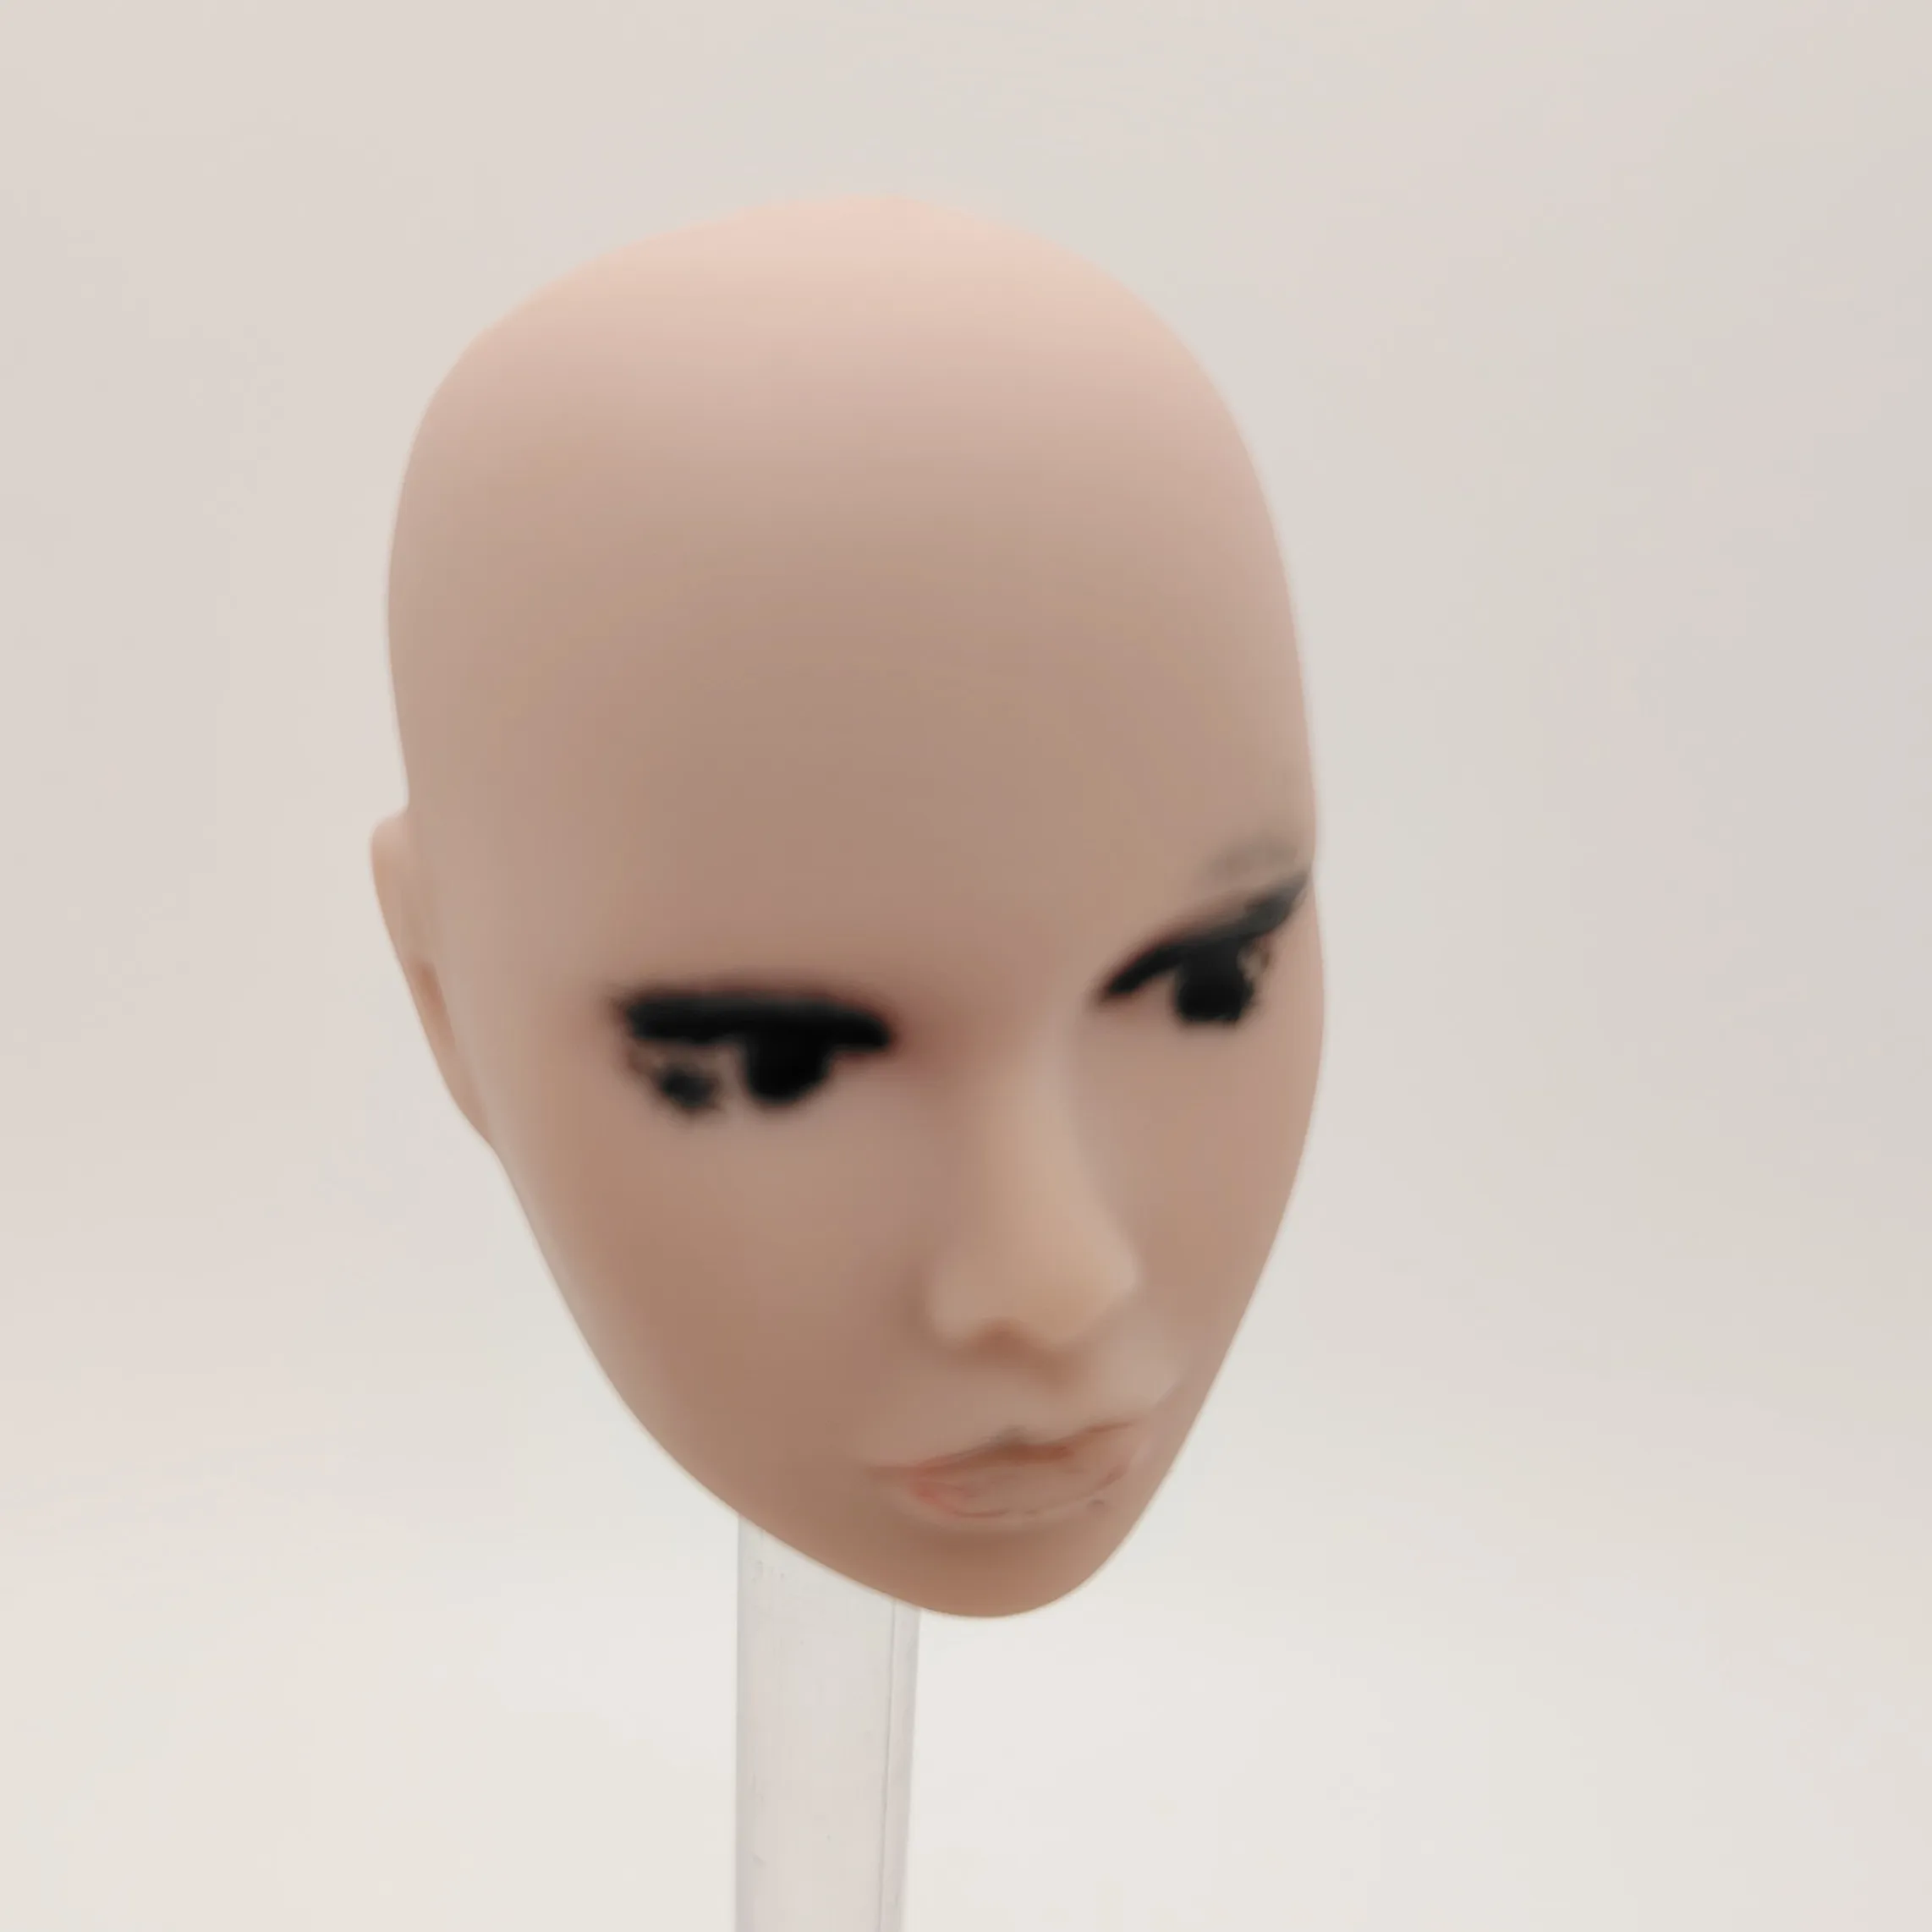 Fashion Royalty Poppy Parker Без Волос 1/6 Масштаб Неокрашенная Пластиковая Кукольная Голова Изображение 1